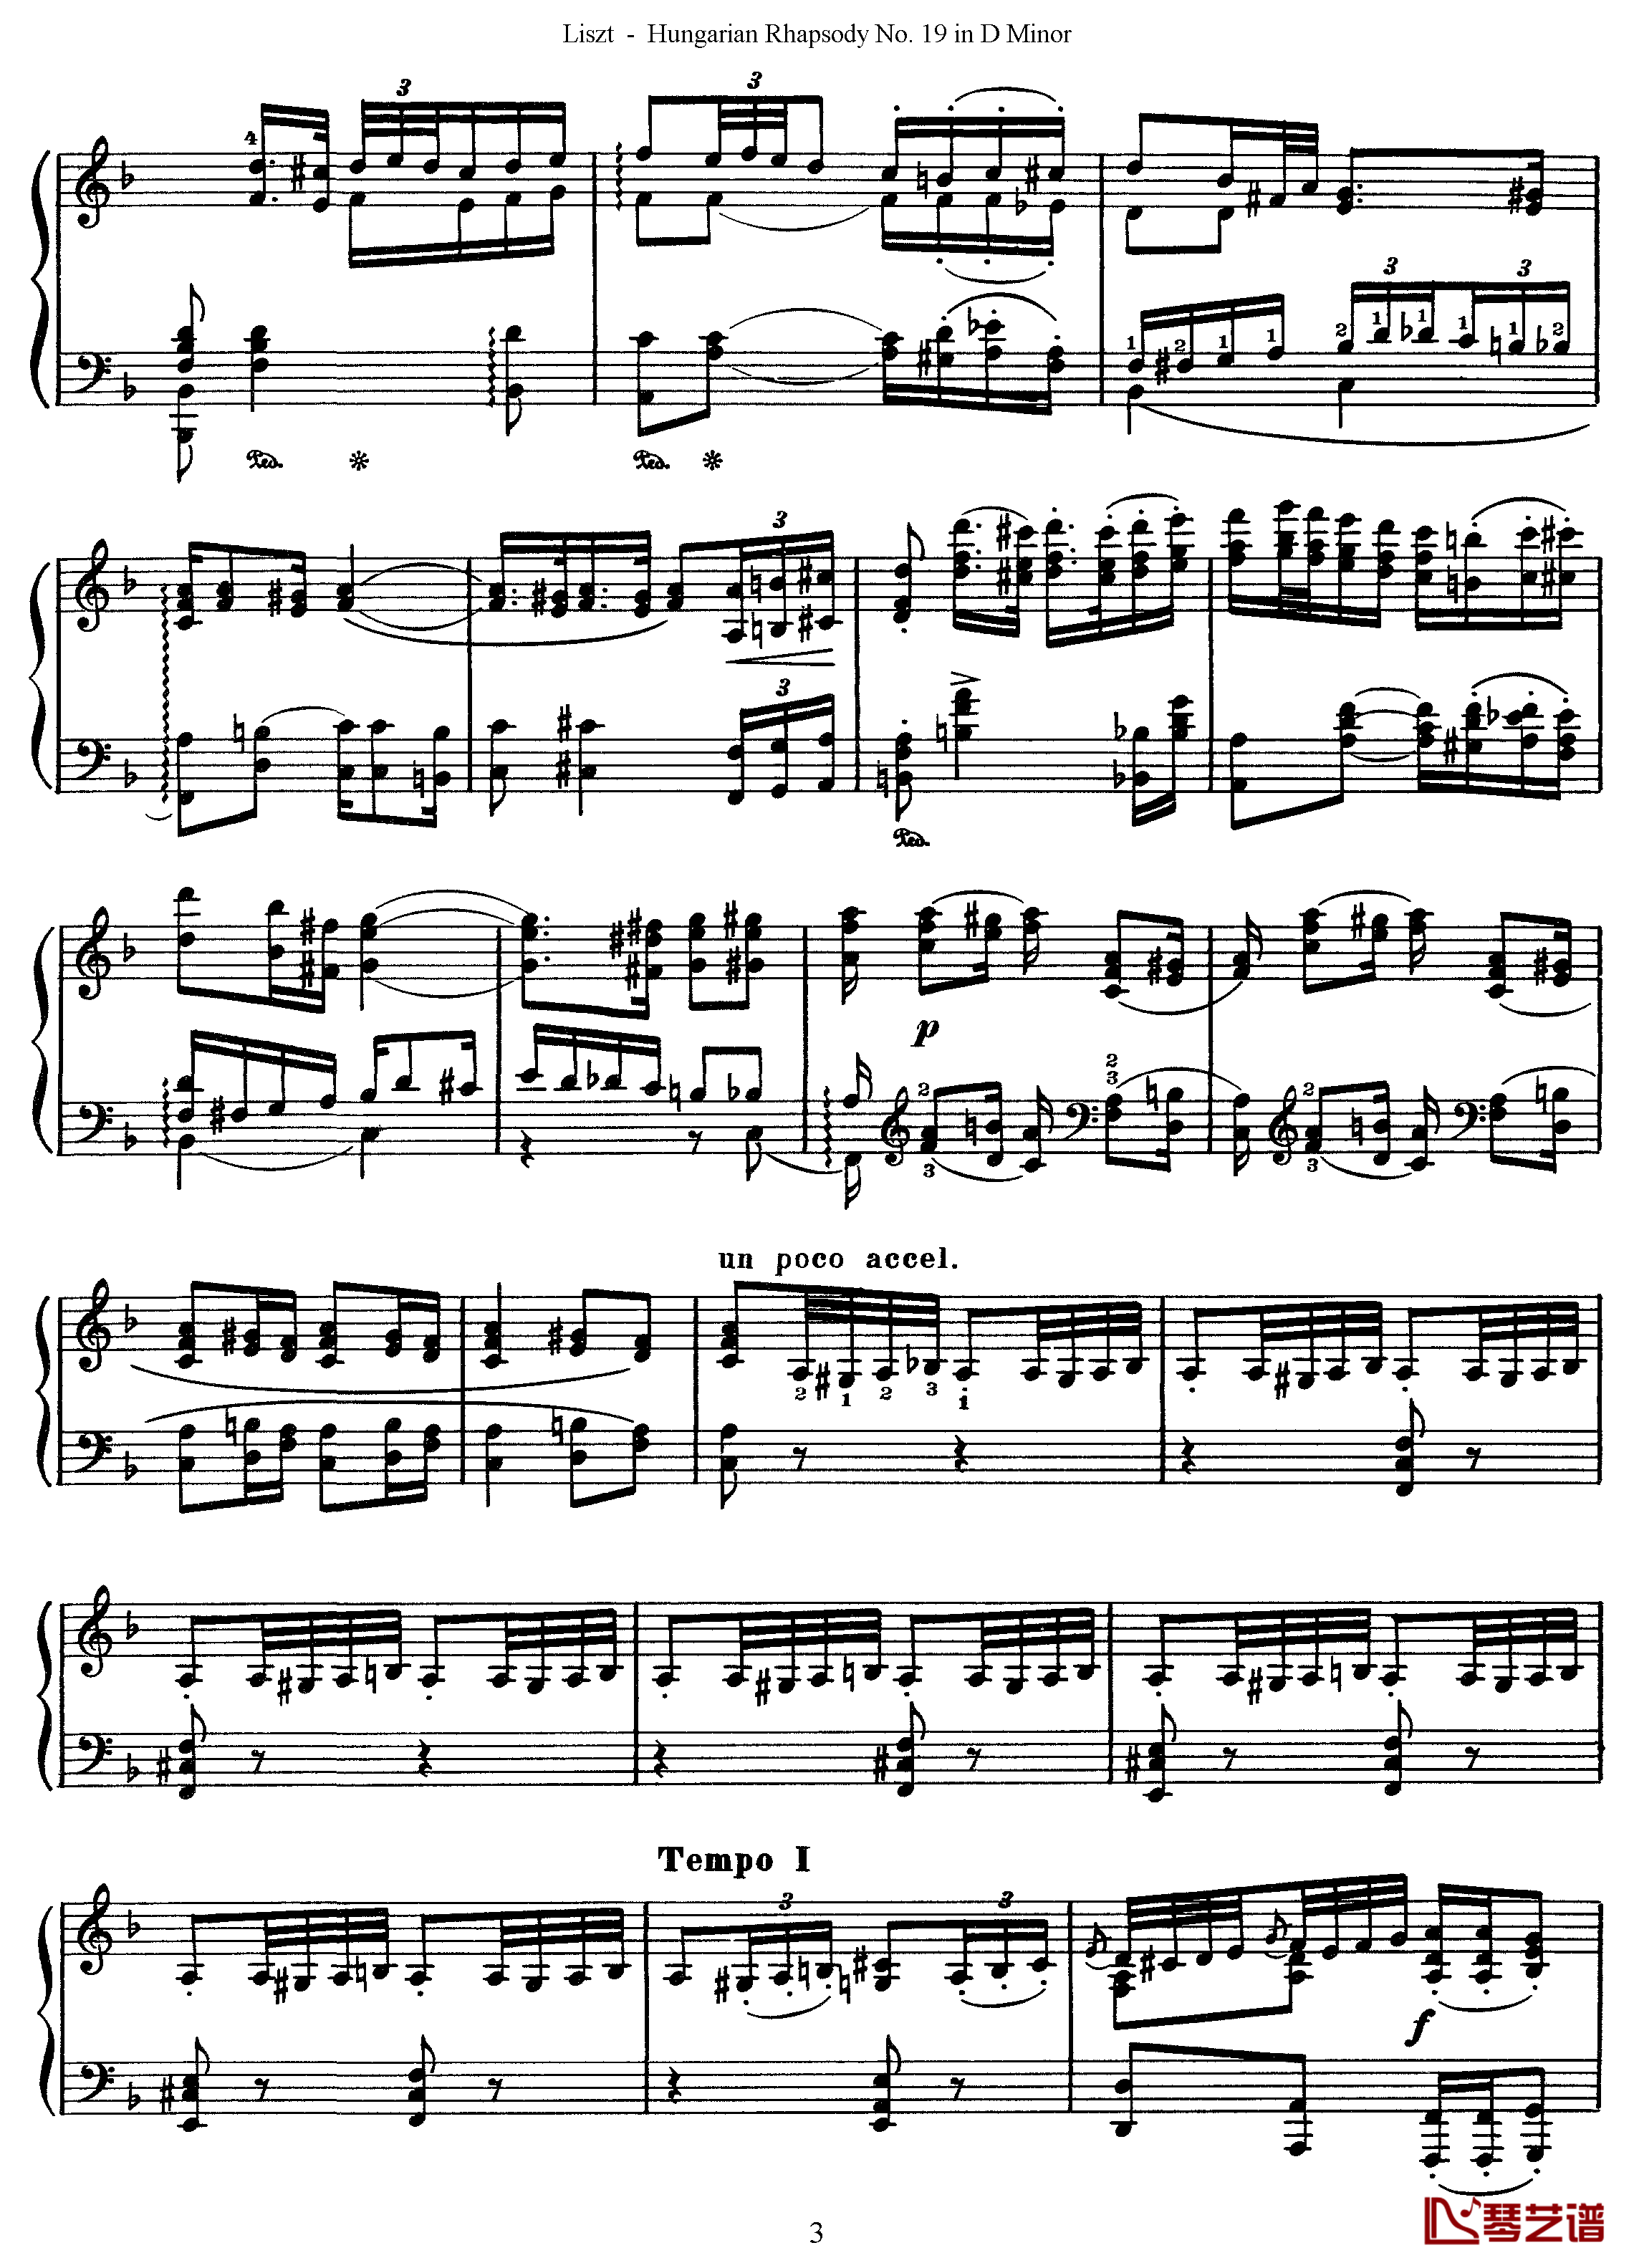 匈牙利狂想曲第19号钢琴谱-最后的狂想-李斯特3